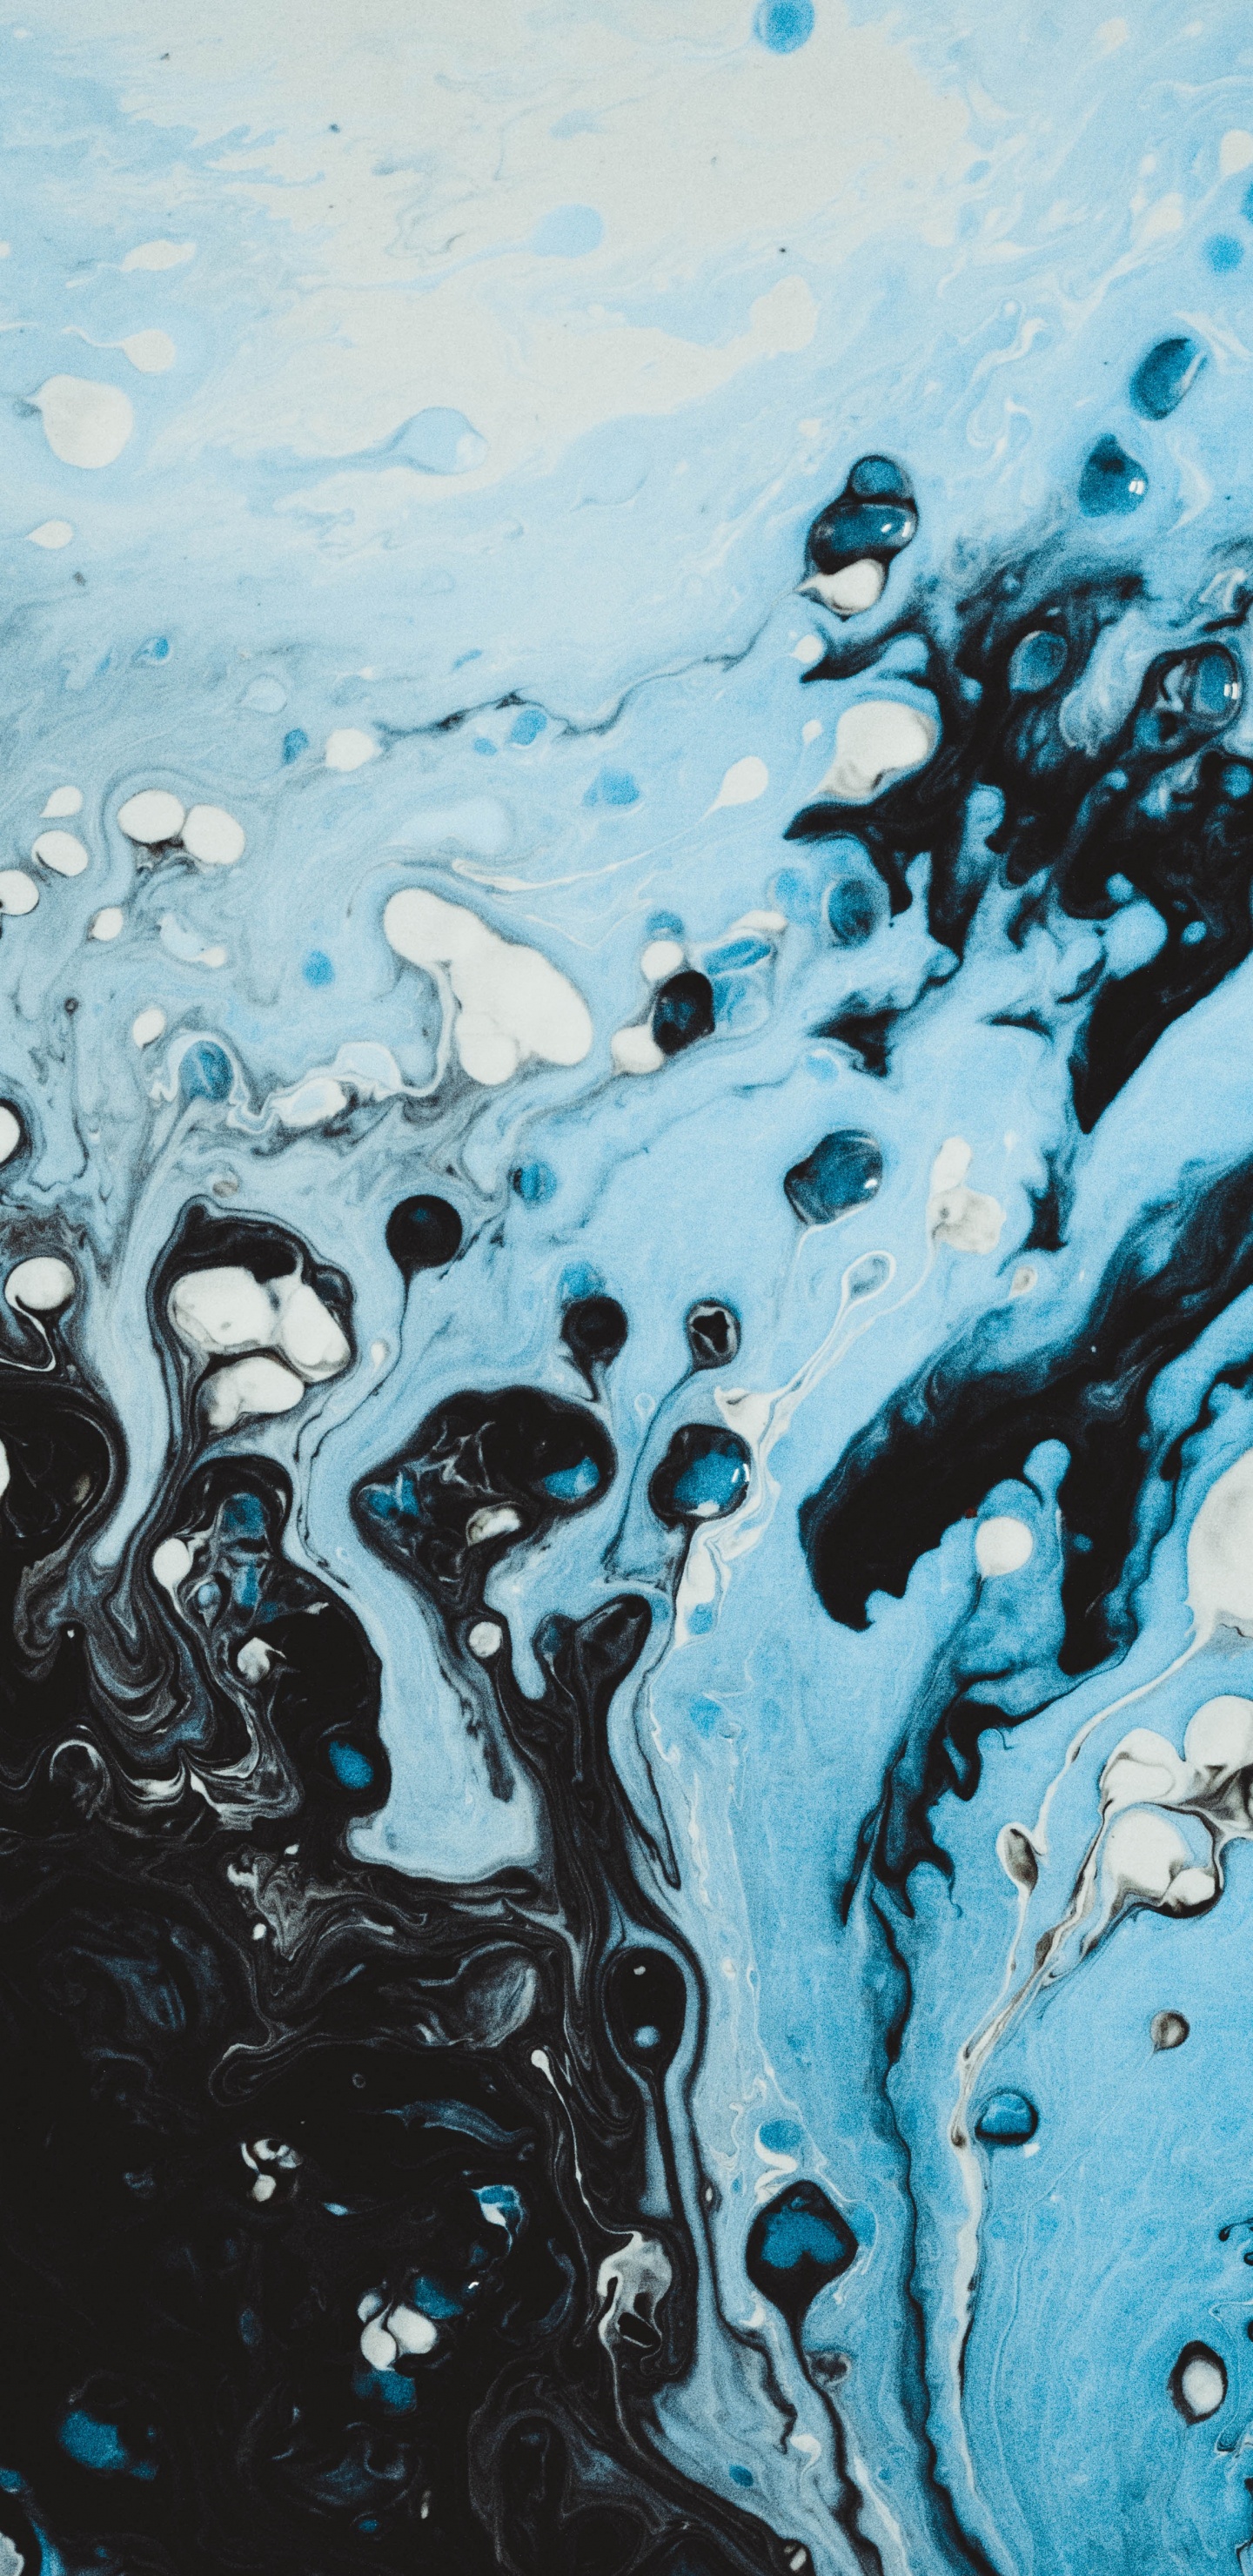 Éclaboussures D'eau Bleue et Blanche. Wallpaper in 1440x2960 Resolution